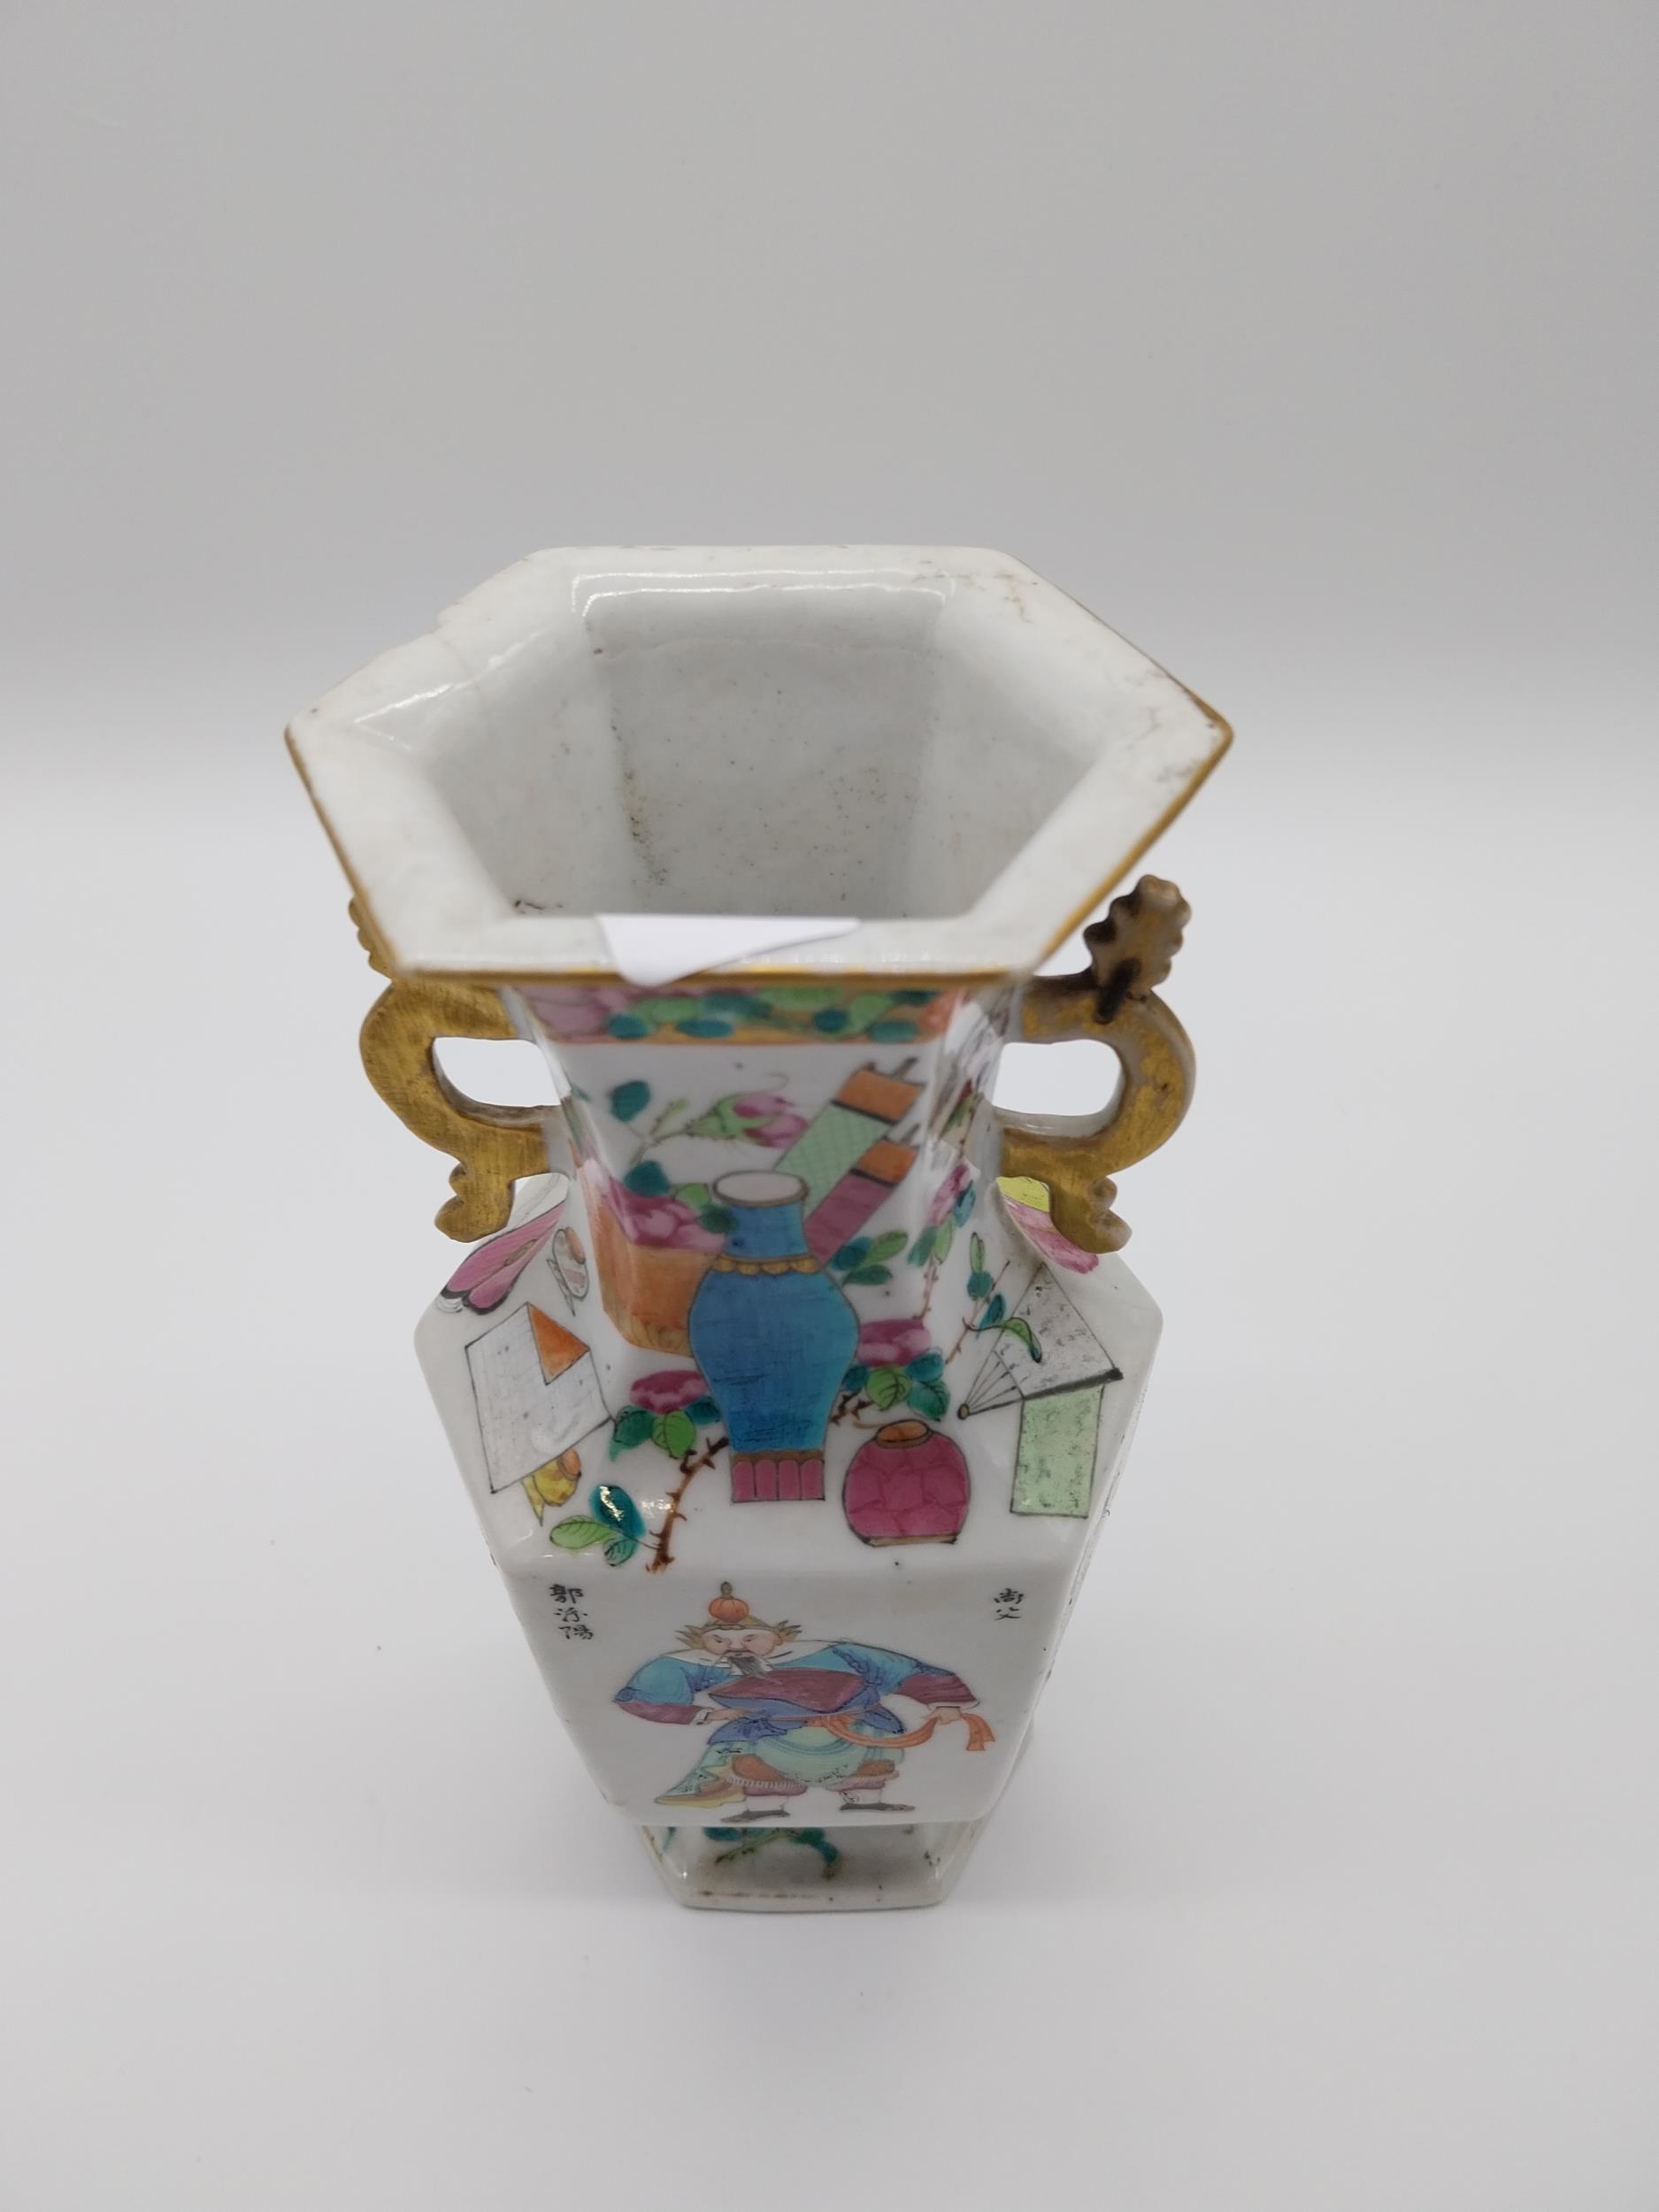 19th C. Oriental hand painted ceramic vase {22 cm H x 11 cm H}. - Image 2 of 4